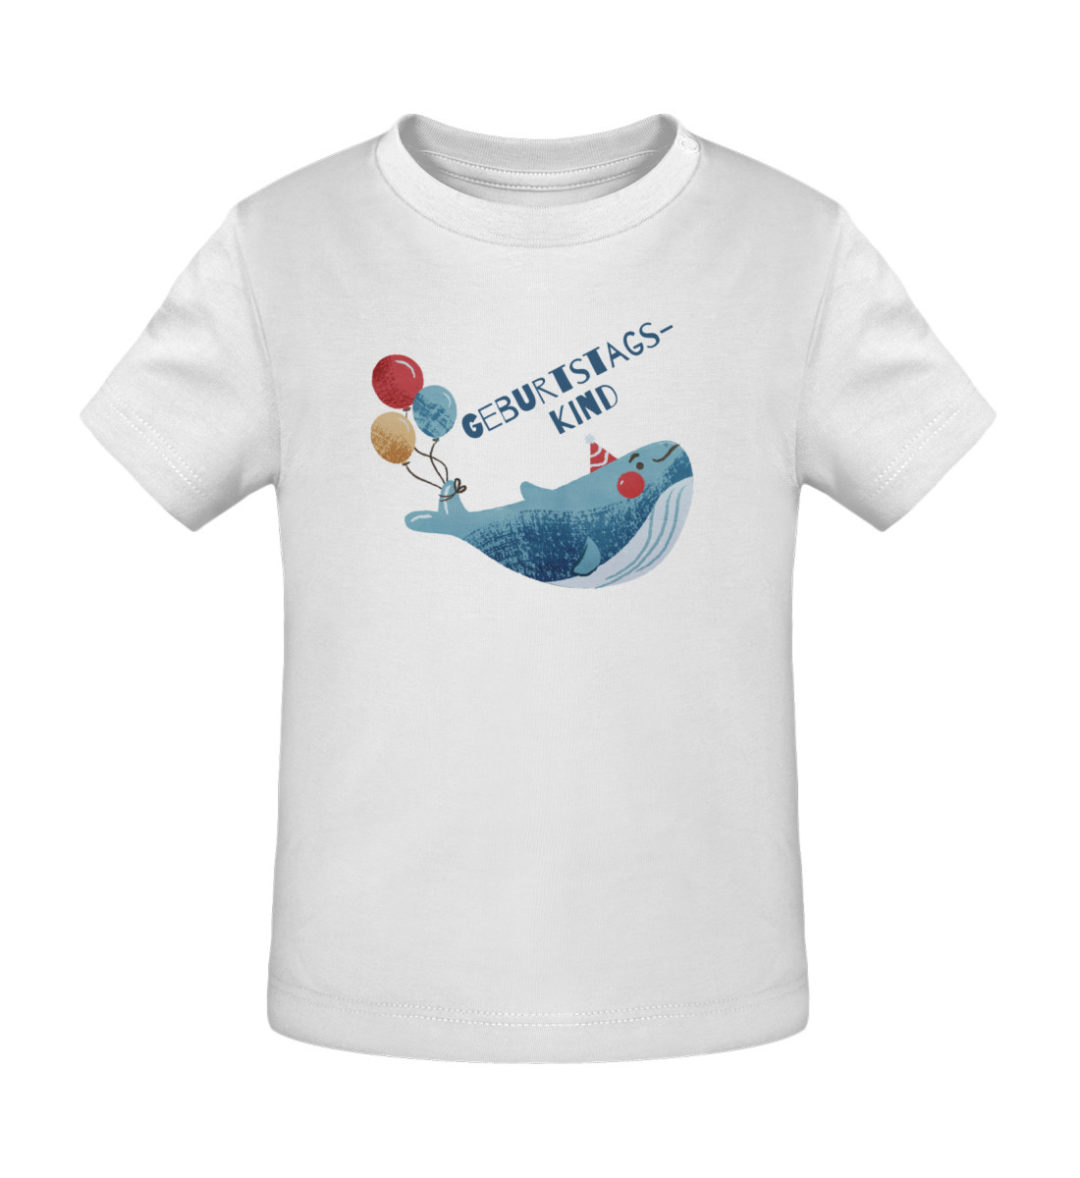 Geburtstagskind - Baby Creator T-Shirt ST/ST-3